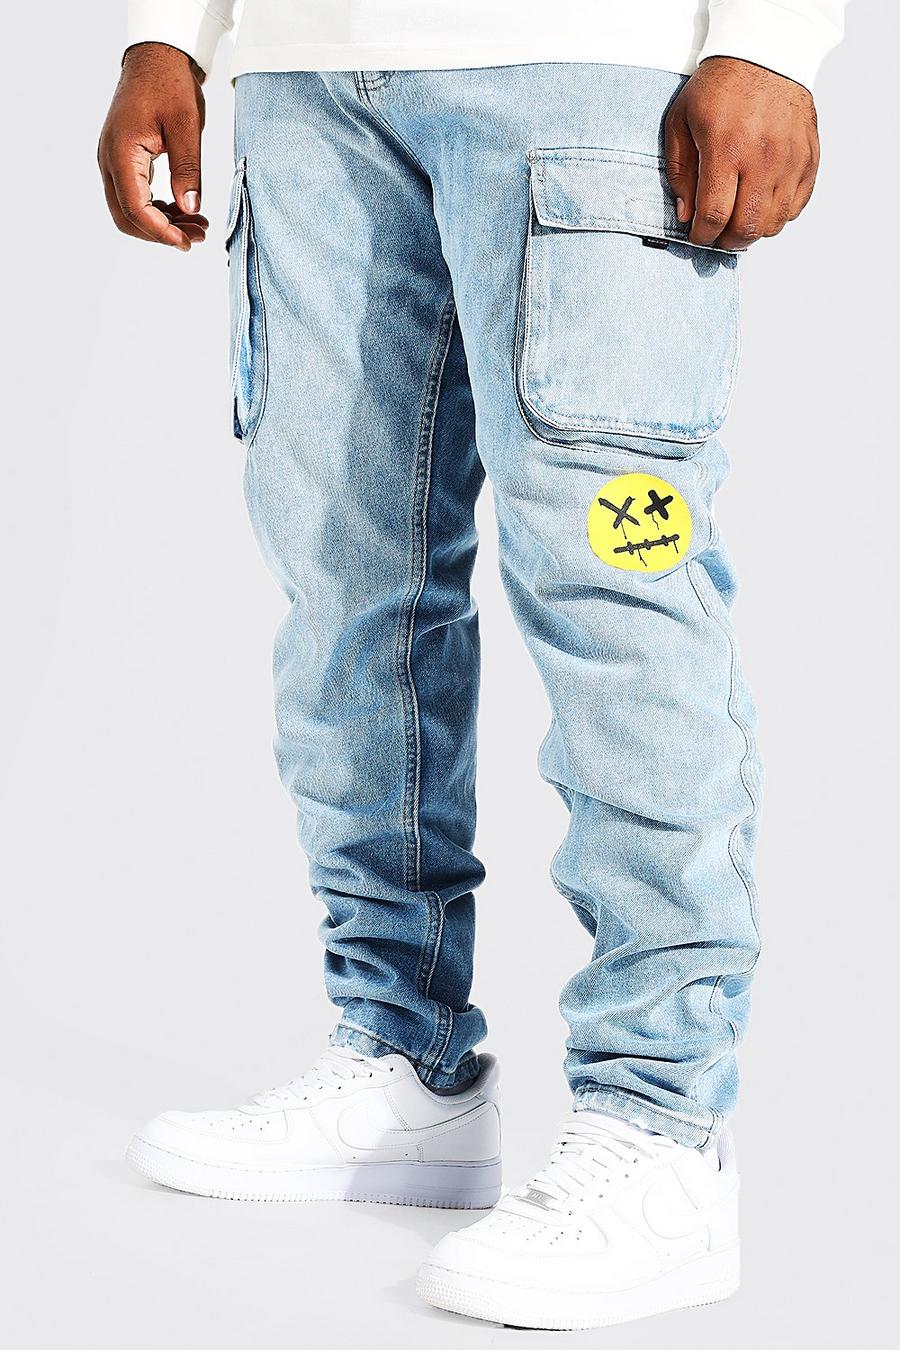 כחול קרח סקיני ג'ינס דגמ'ח מבד קשיח עם קצוות נערמים עם הדפס למידות גדולות